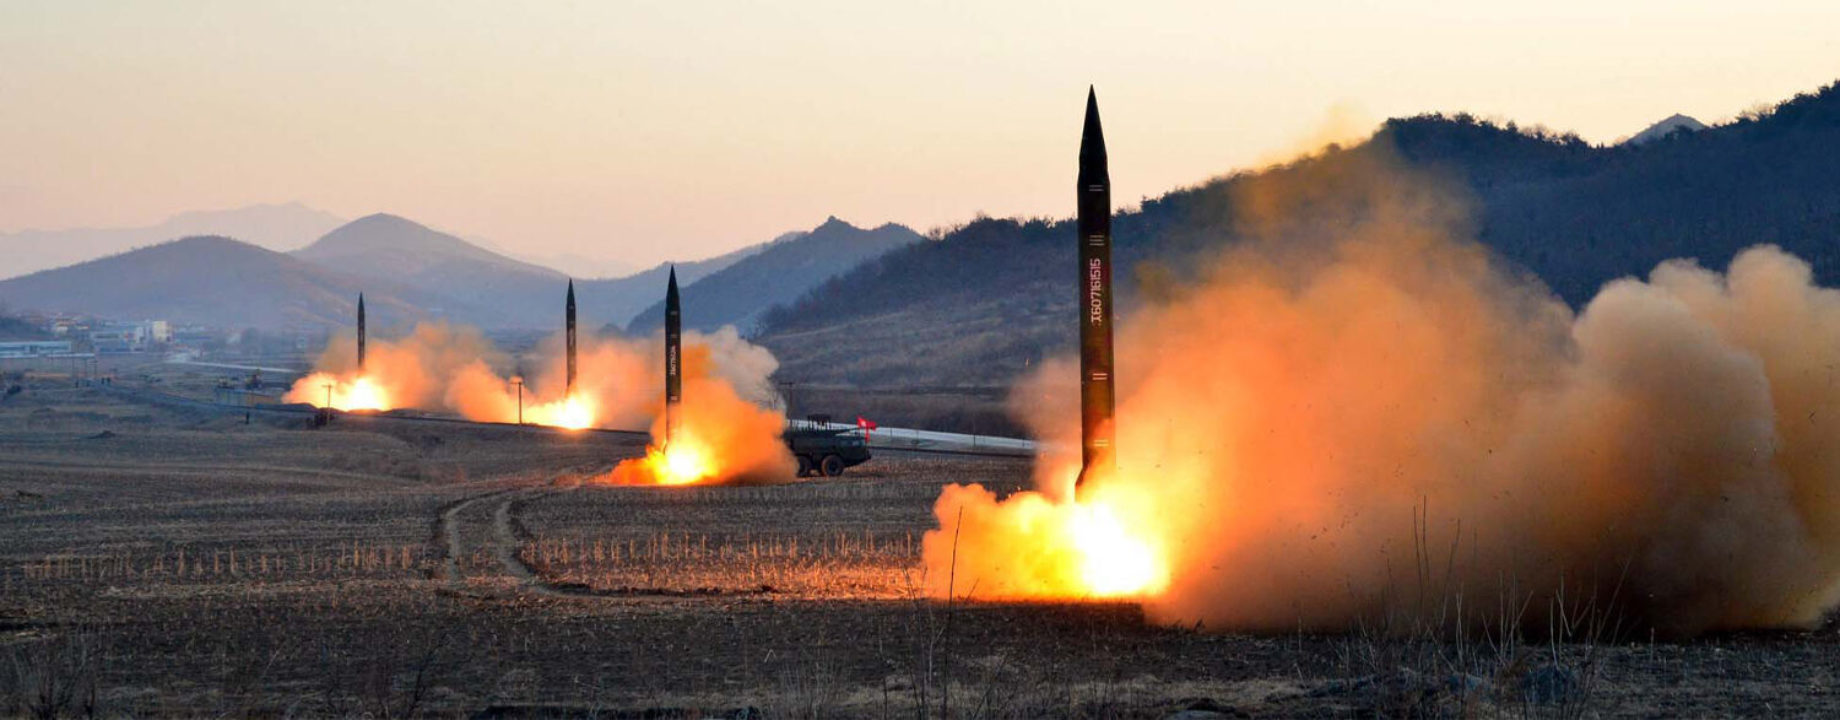 koreai rakéták